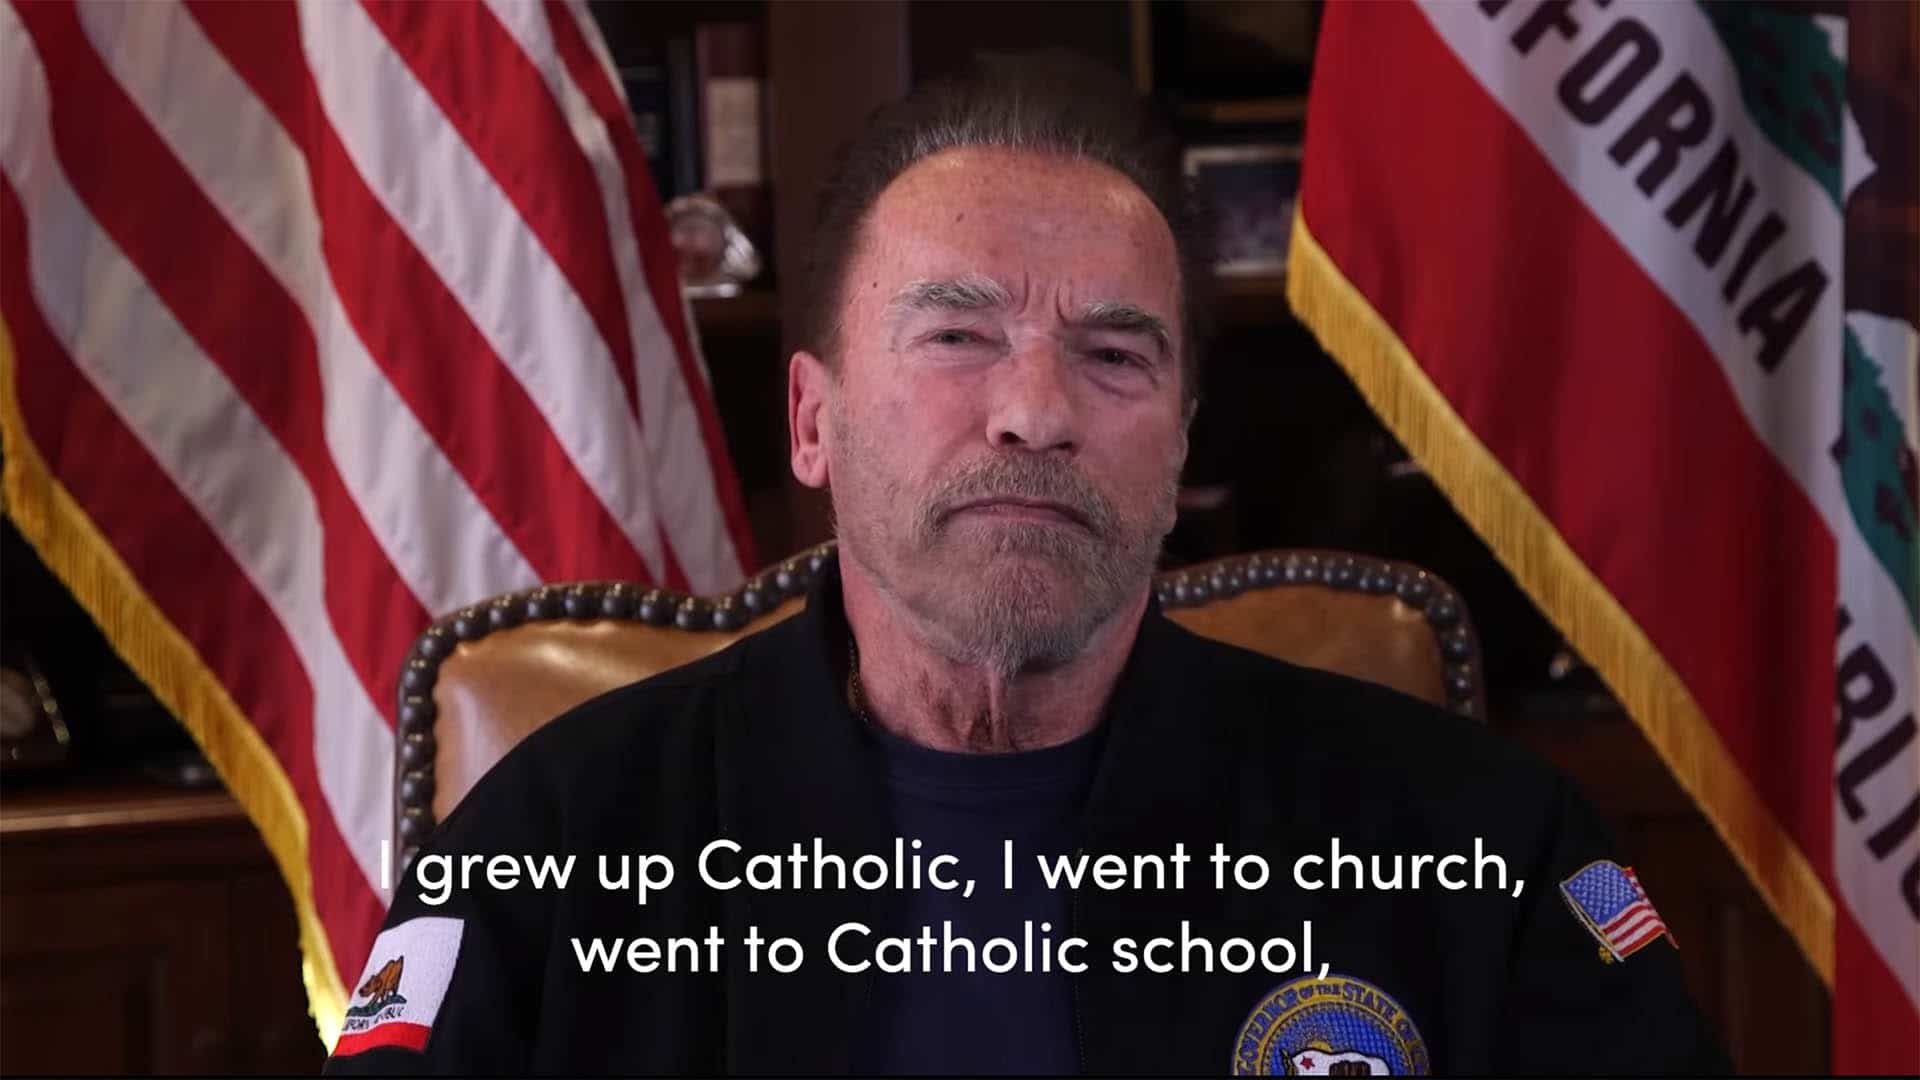 In seiner katholischen Erziehung habe er einen Ausdruck gelernt, den er nun vermisse: „das Herz eines Dieners haben“, sagte der Schauspieler und Politiker Arnold Schwarzenegger in einer vielbeachteten Videobotschaft